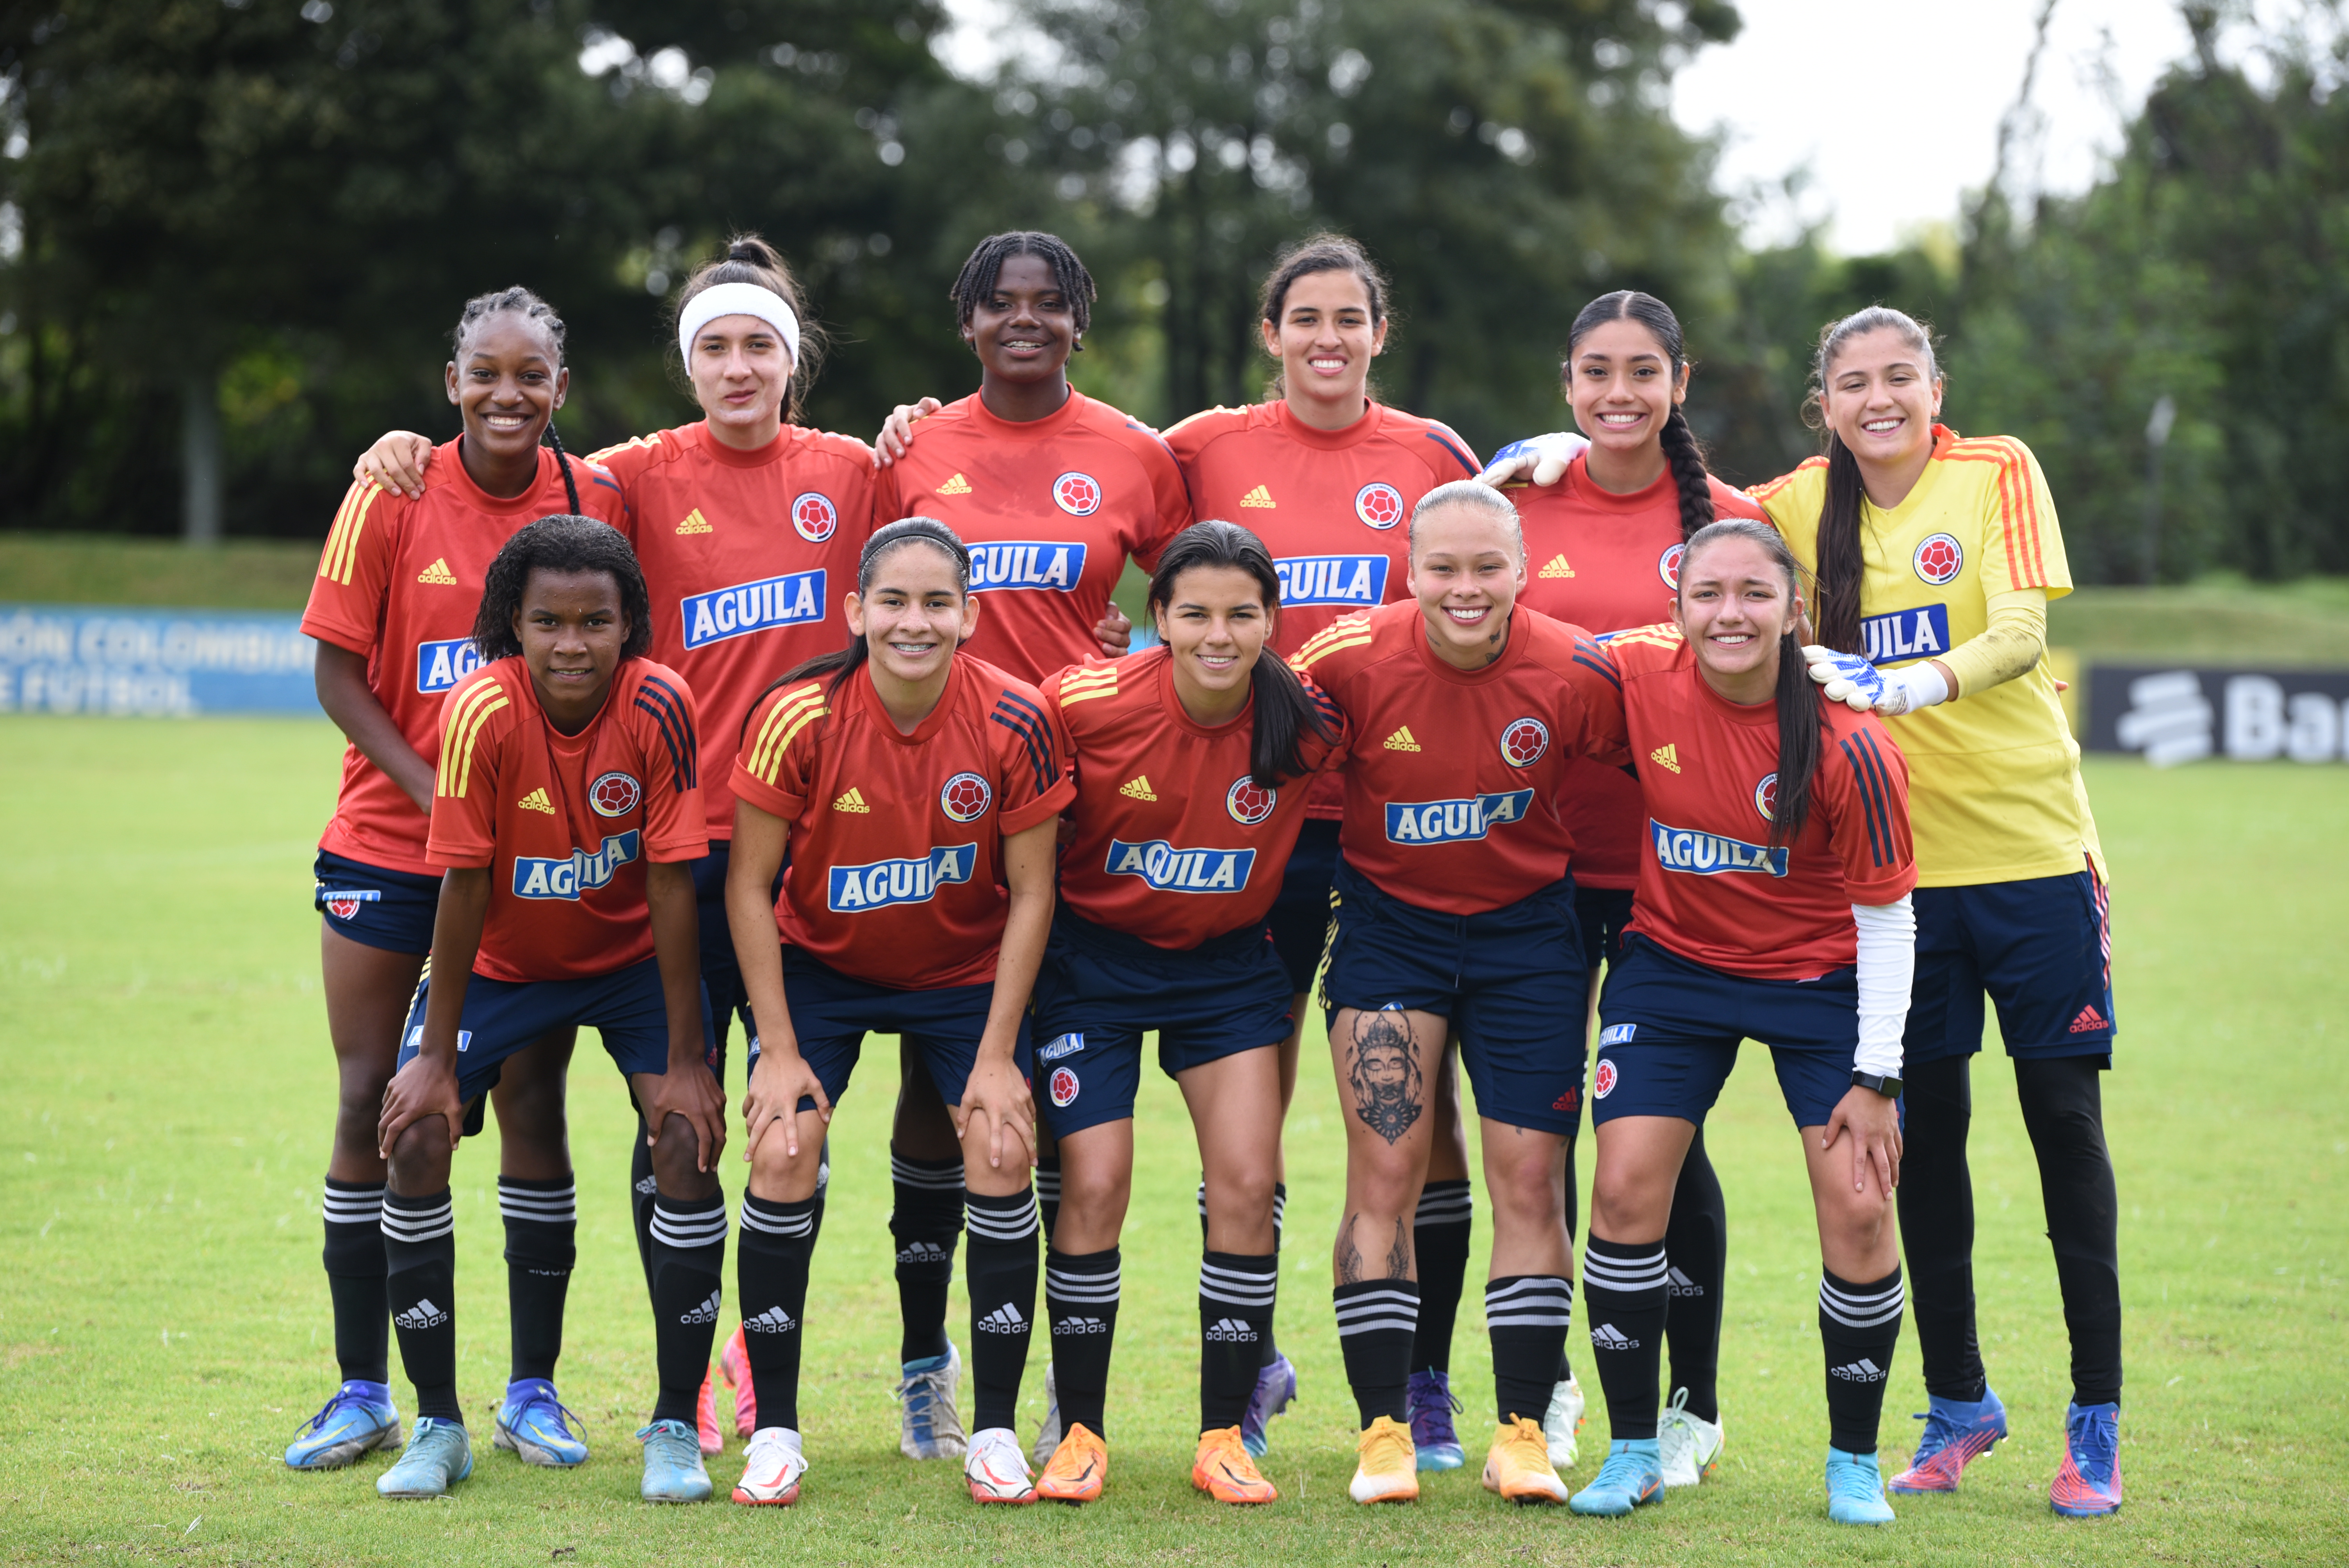 La selección Colombia Femenina sub-20 está lista para enfrentar a Alemania en su debut mundialista